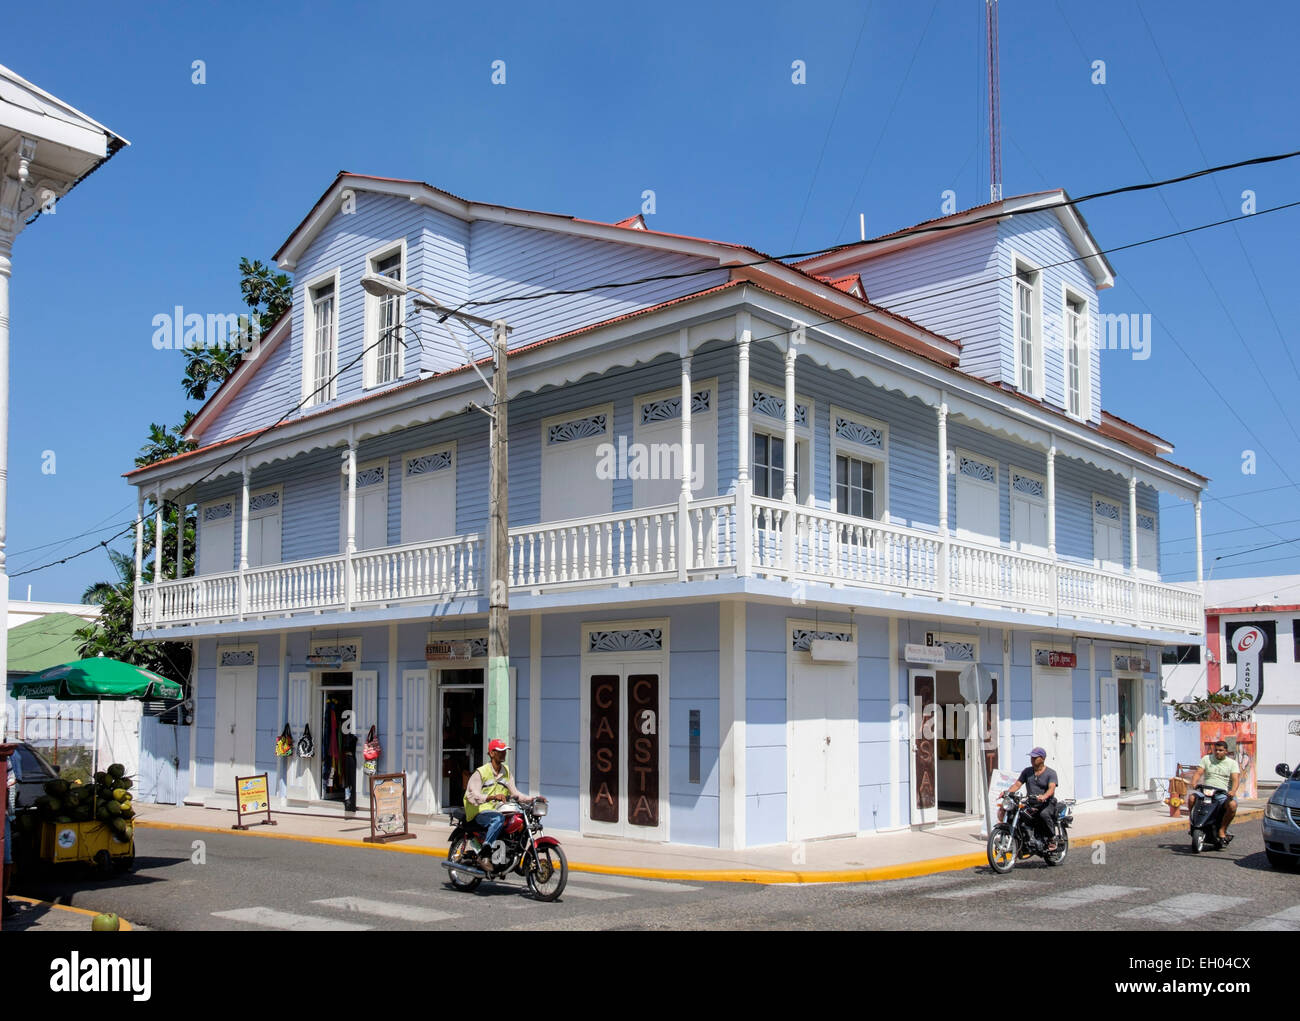 Antiguo edificio colonial de madera de estilo Victoriano con tiendas en la Calle Beller Street, San Felipe de Puerto Plata, República Dominicana. Foto de stock